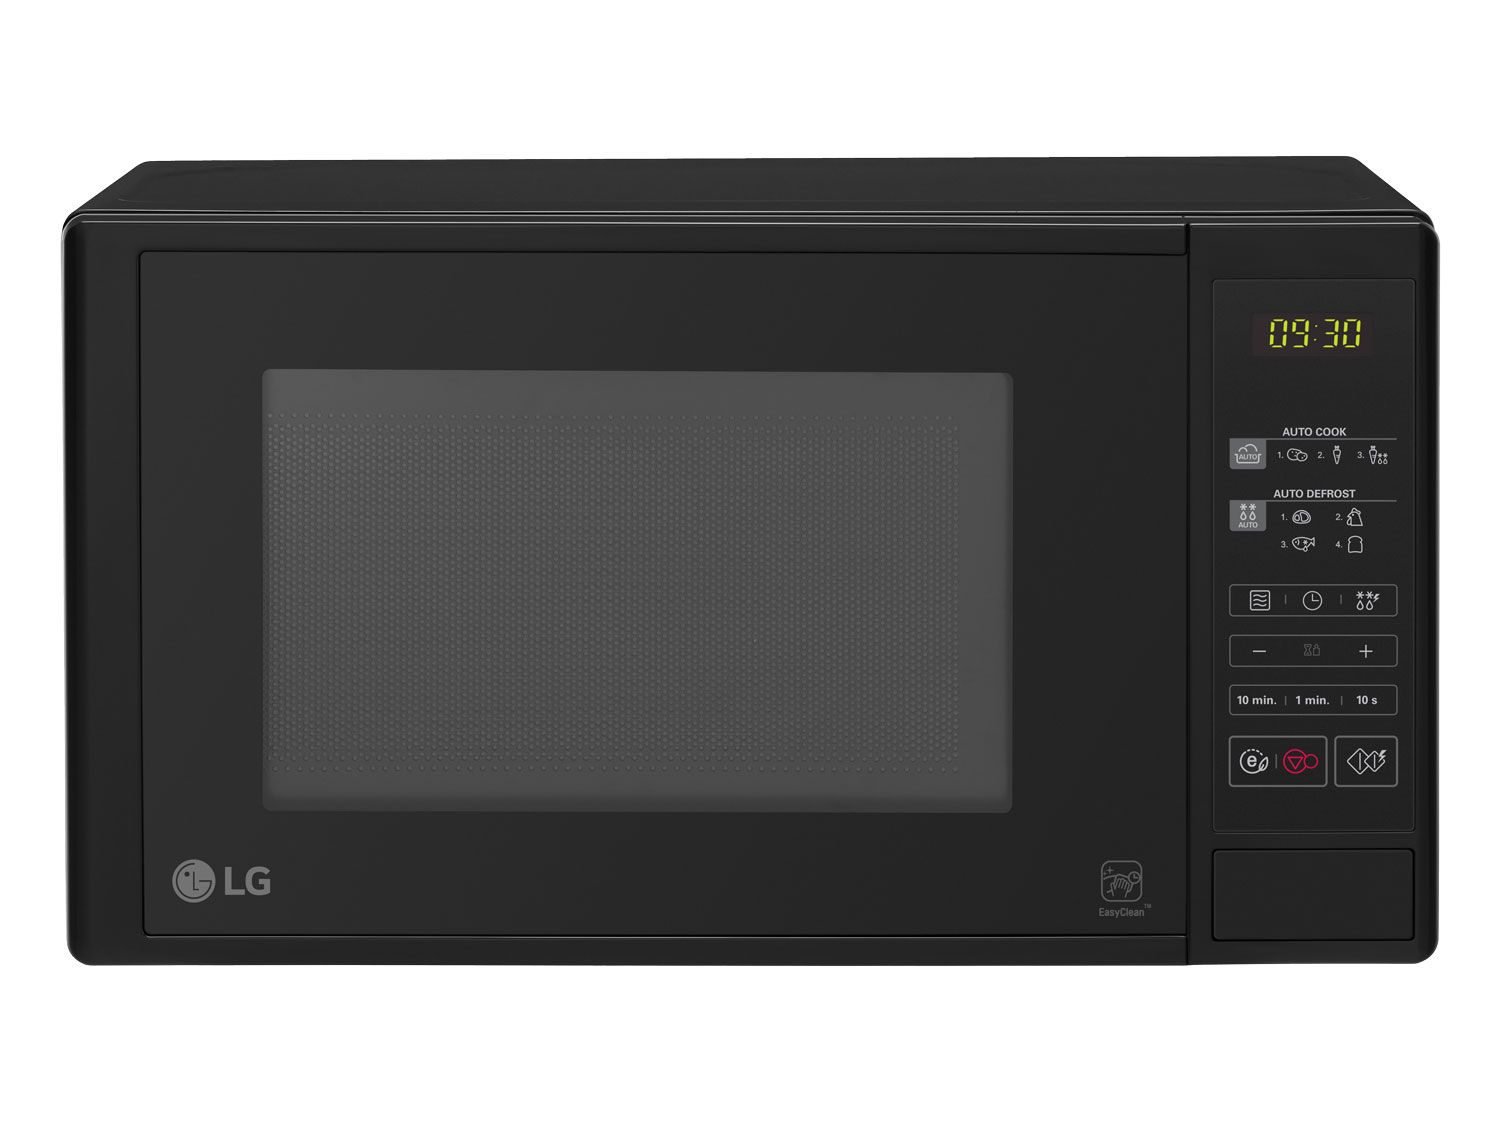 #LG Mikrowelle »MS 2042 D«, 20 L, schwarz#